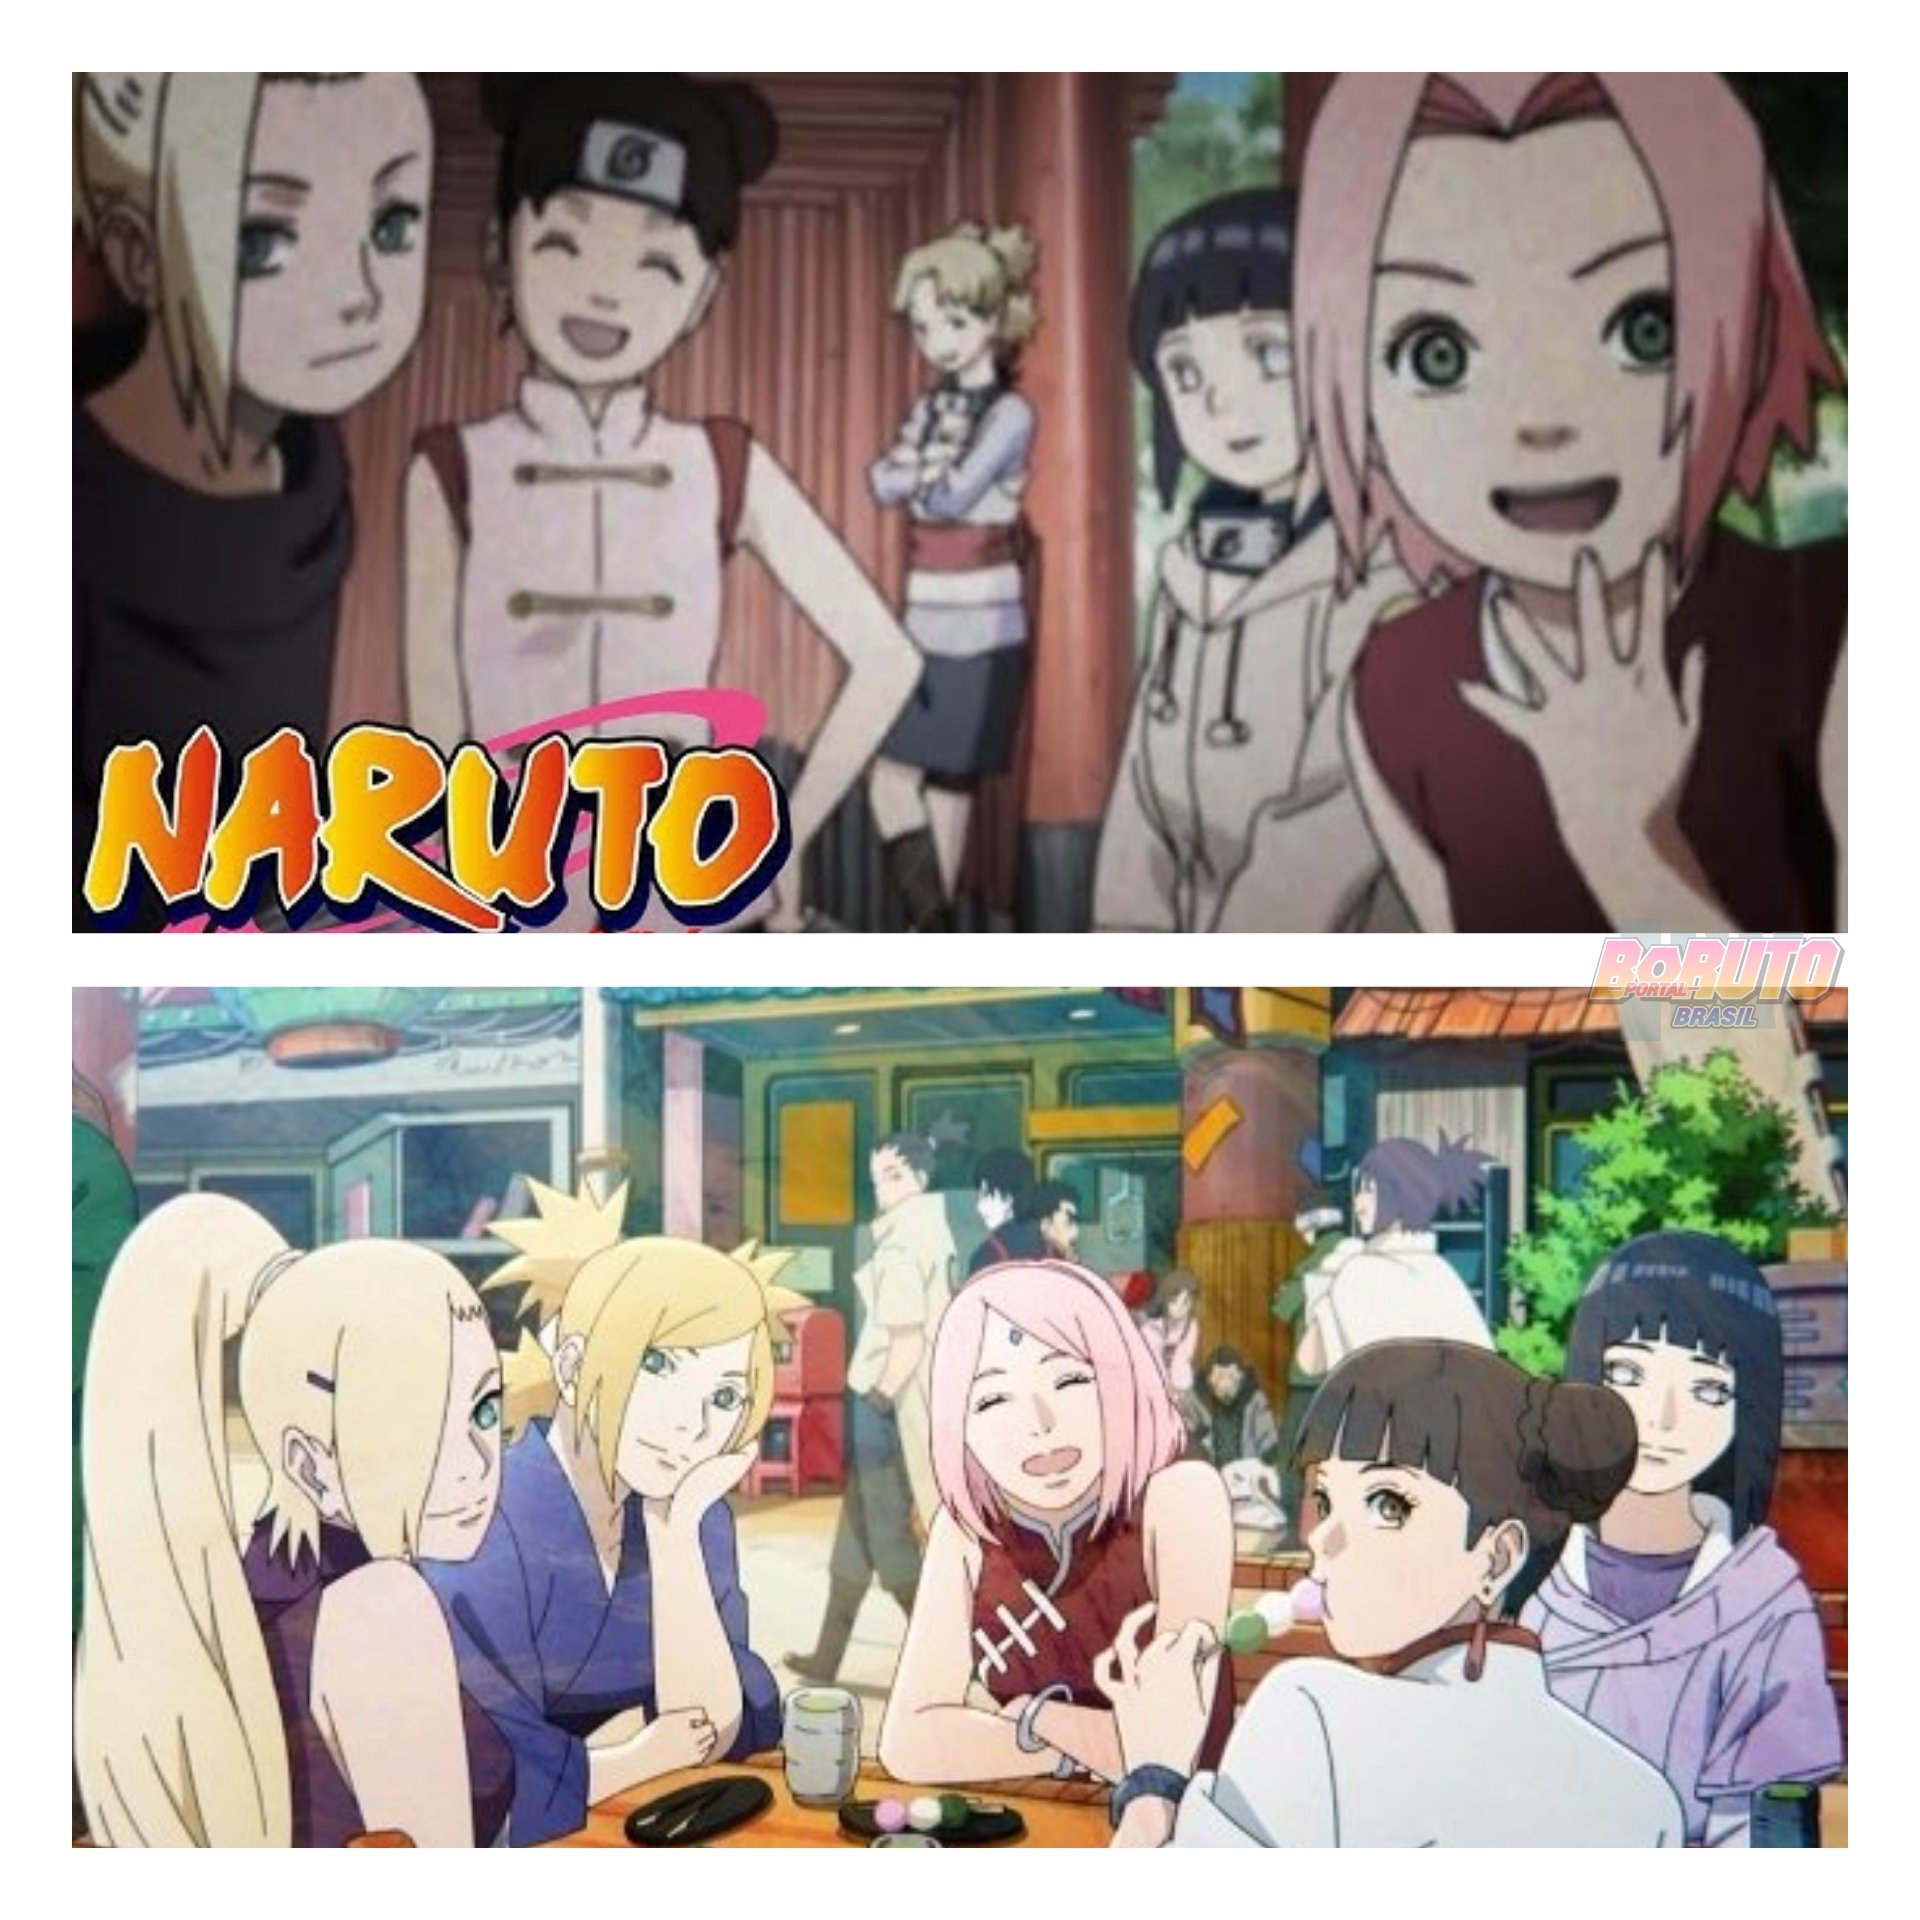 Portal Boruto Brasil on X: Naruto e Boruto sempre juntos! ❤   / X